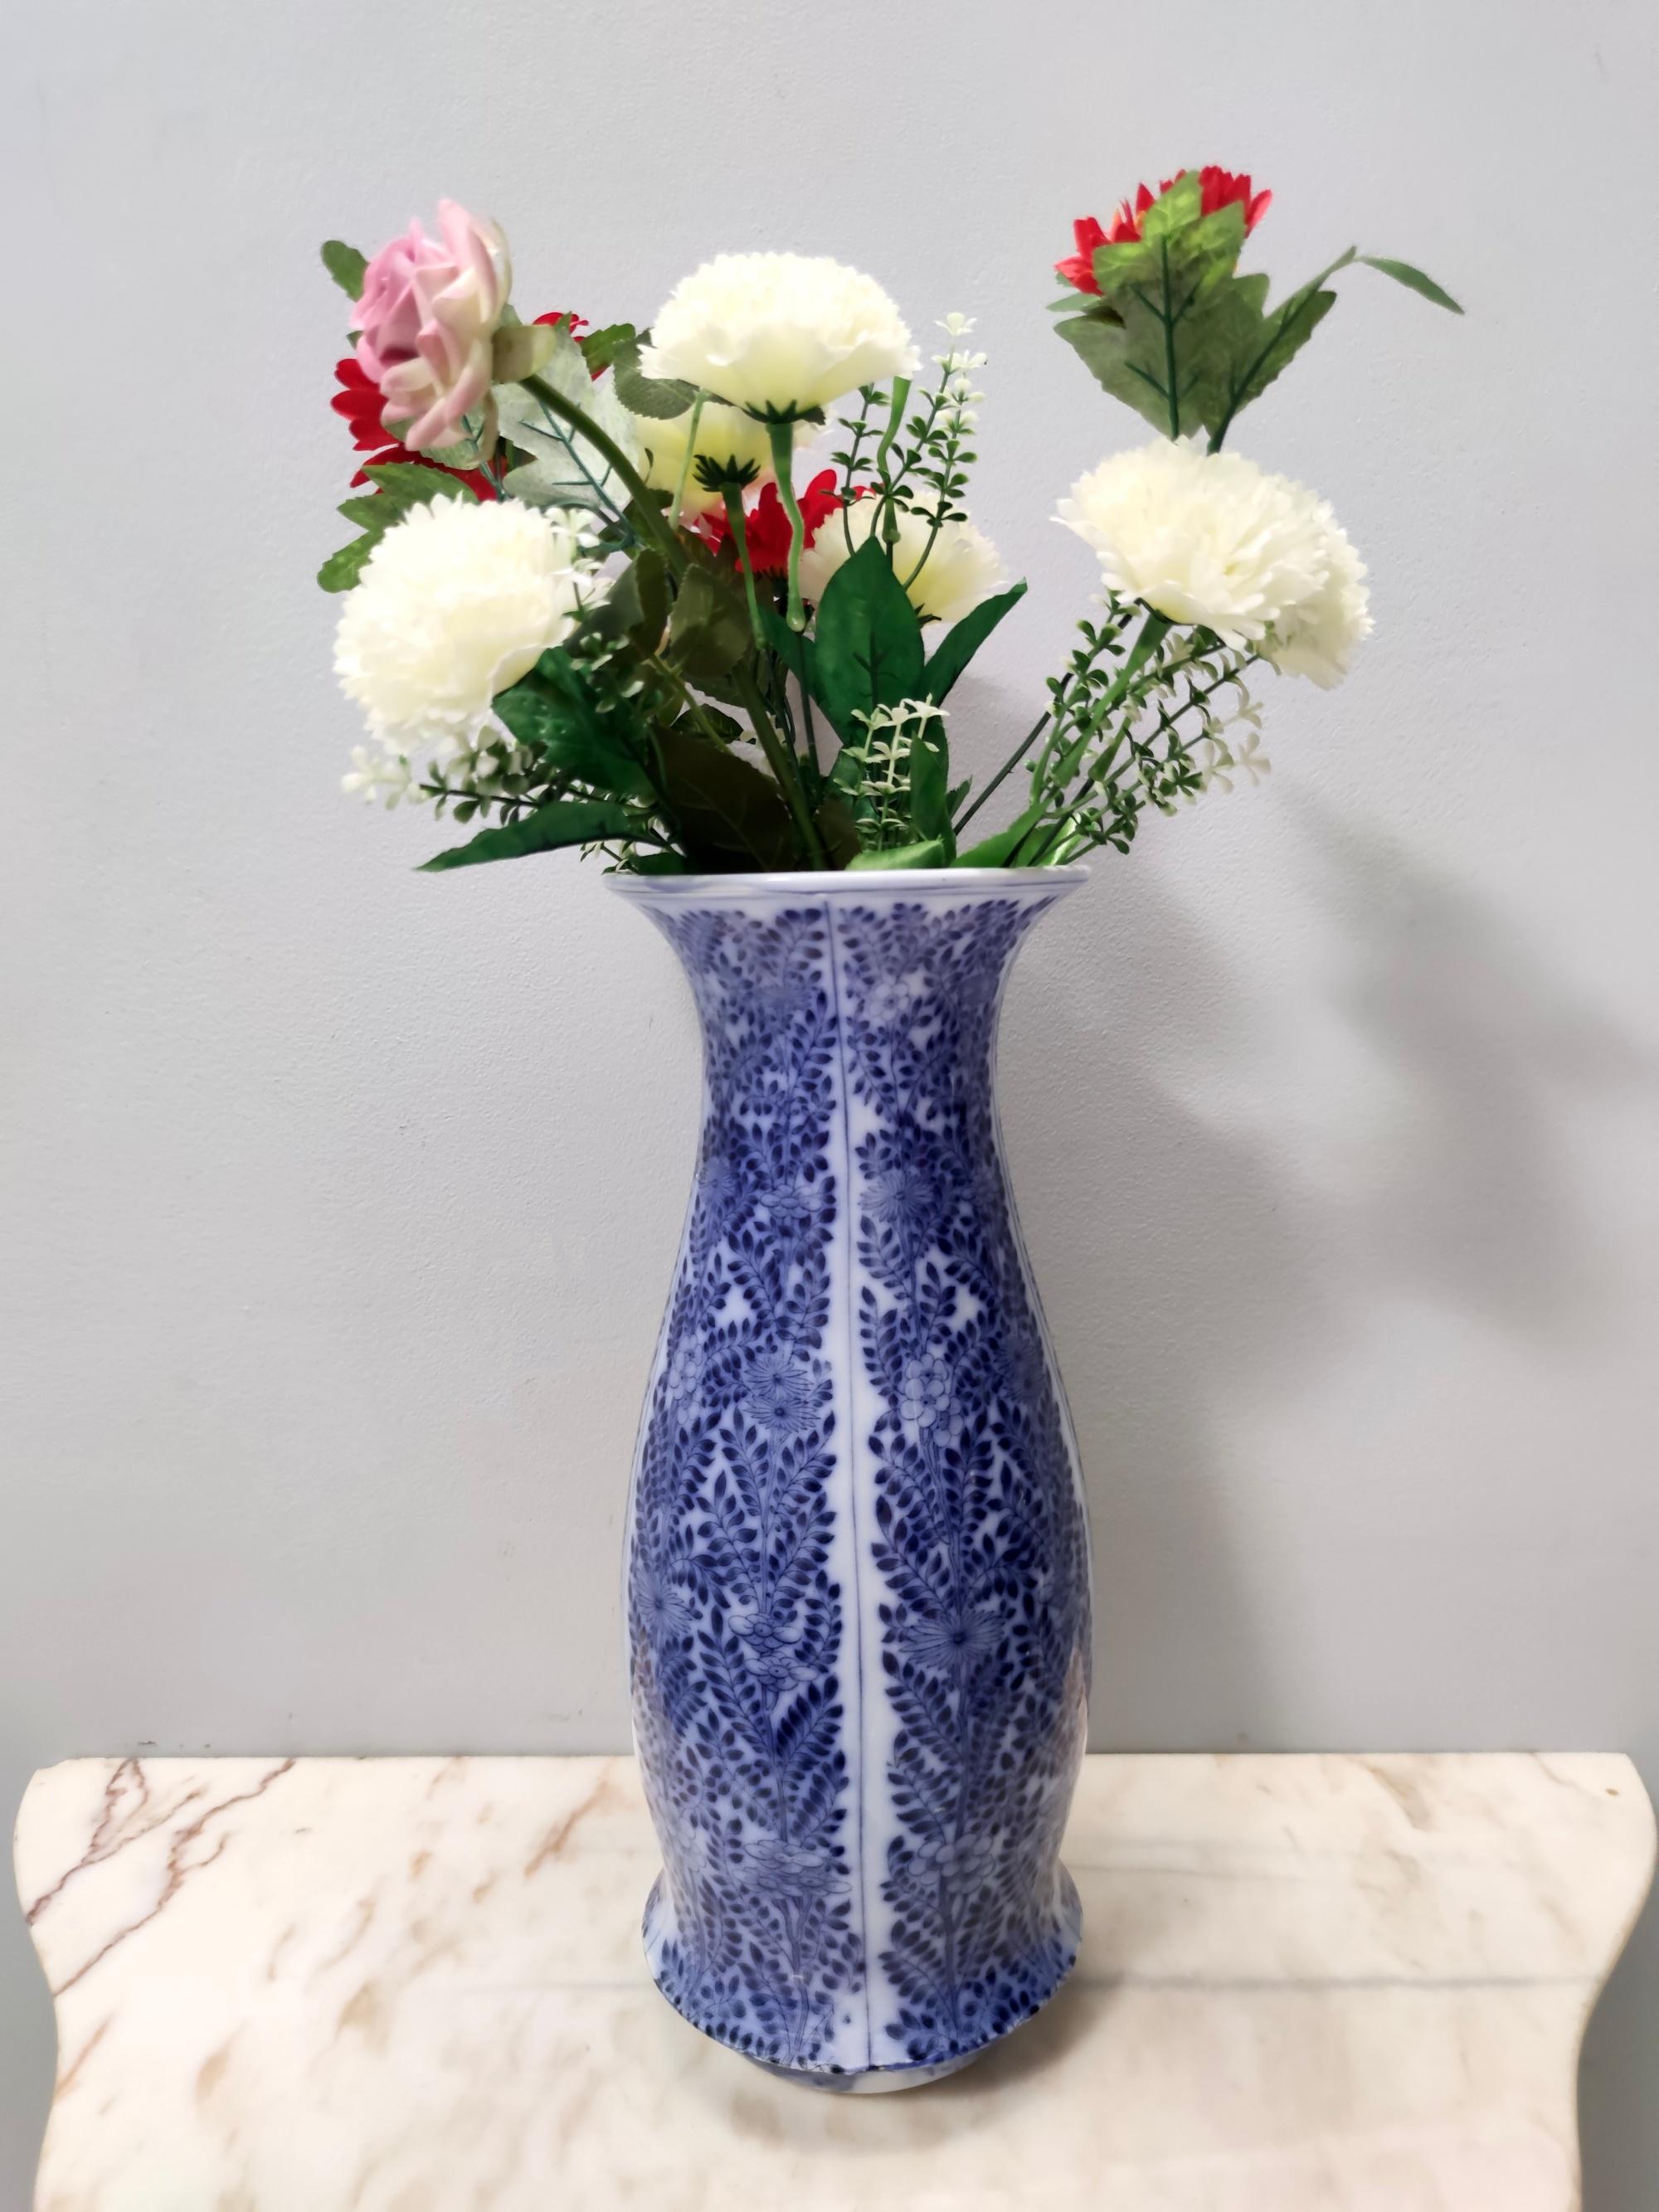 Fabriqué en Italie, années 1940 - 1950. 
Ce vase en céramique laquée bleue de Laveno, Italie. 
Il s'agit d'une pièce d'époque, qui peut donc présenter de légères traces d'utilisation, mais qui peut être considérée comme étant en parfait état